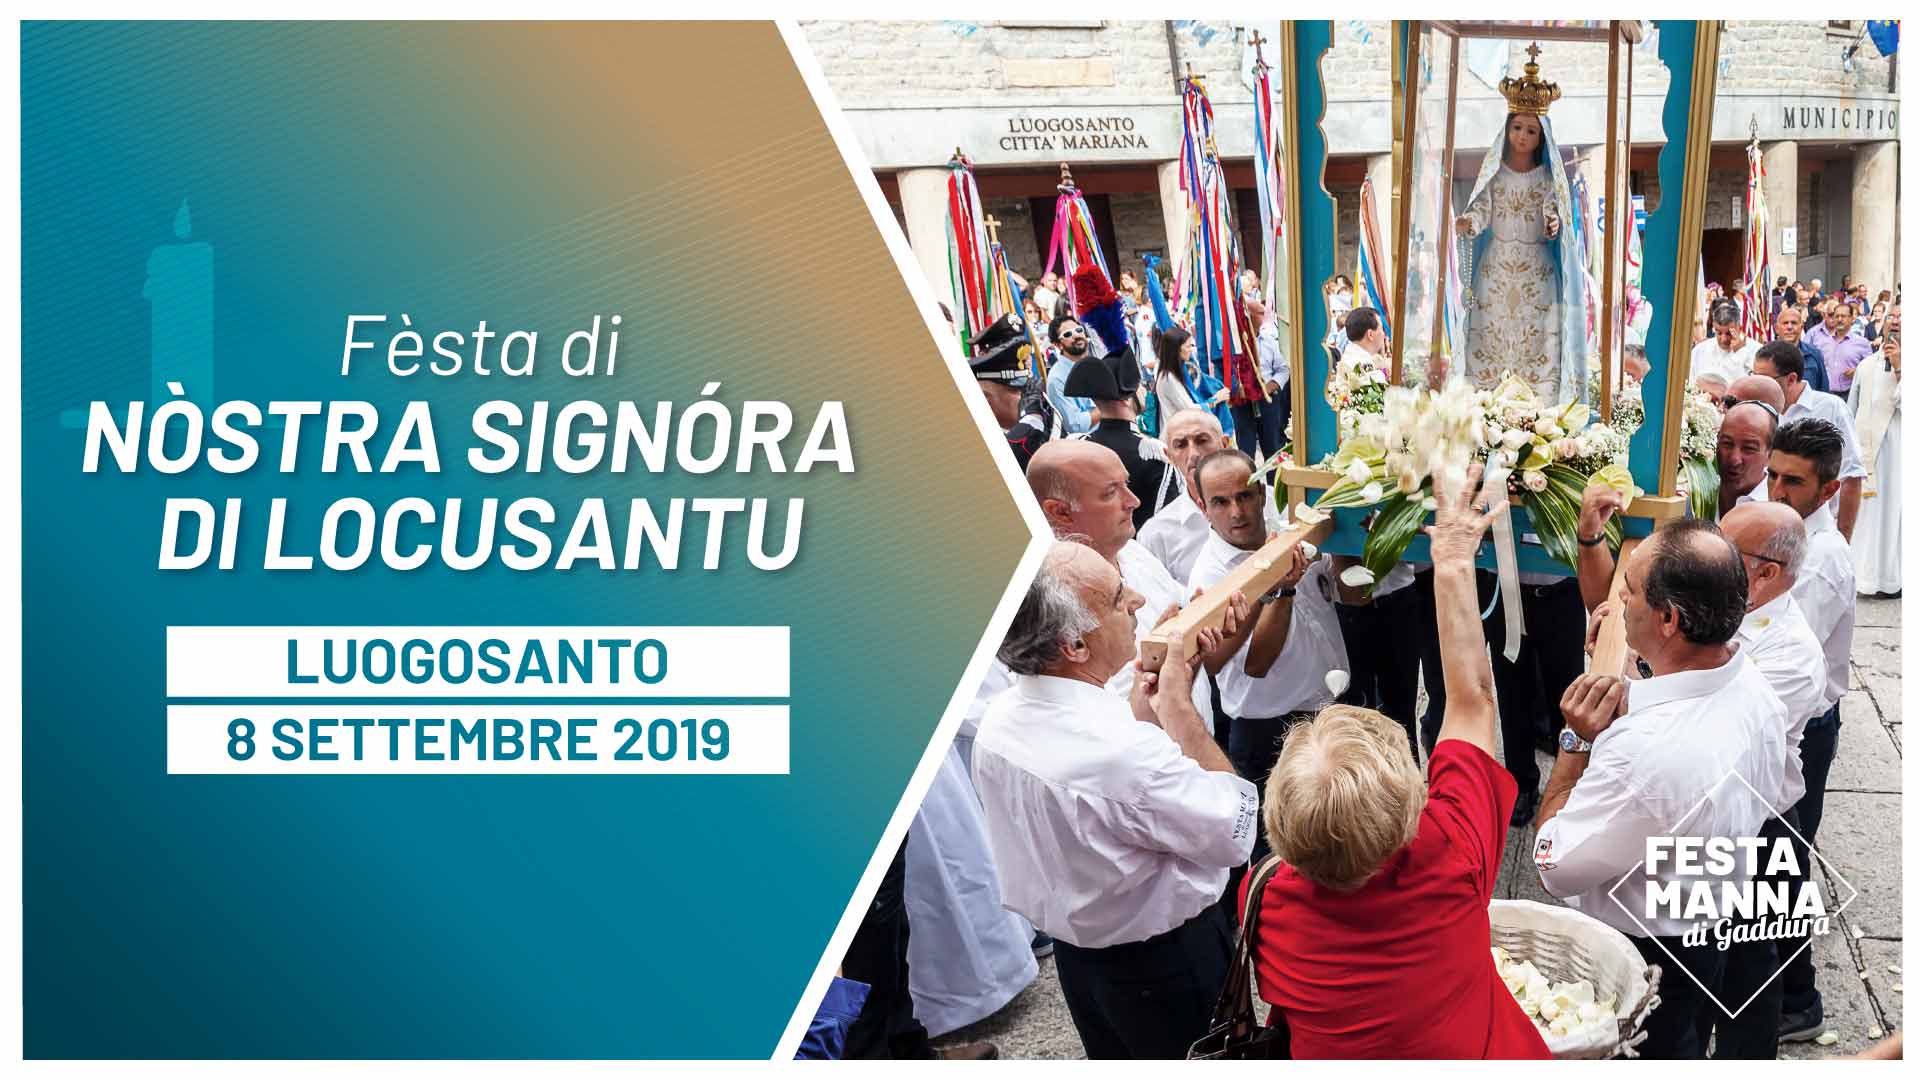 Fèsta di Nòstra Signóra di Locusantu: Prucissiòni di Nòstra Signóra e Missa Manna | Festa Manna di Gaddura 2019